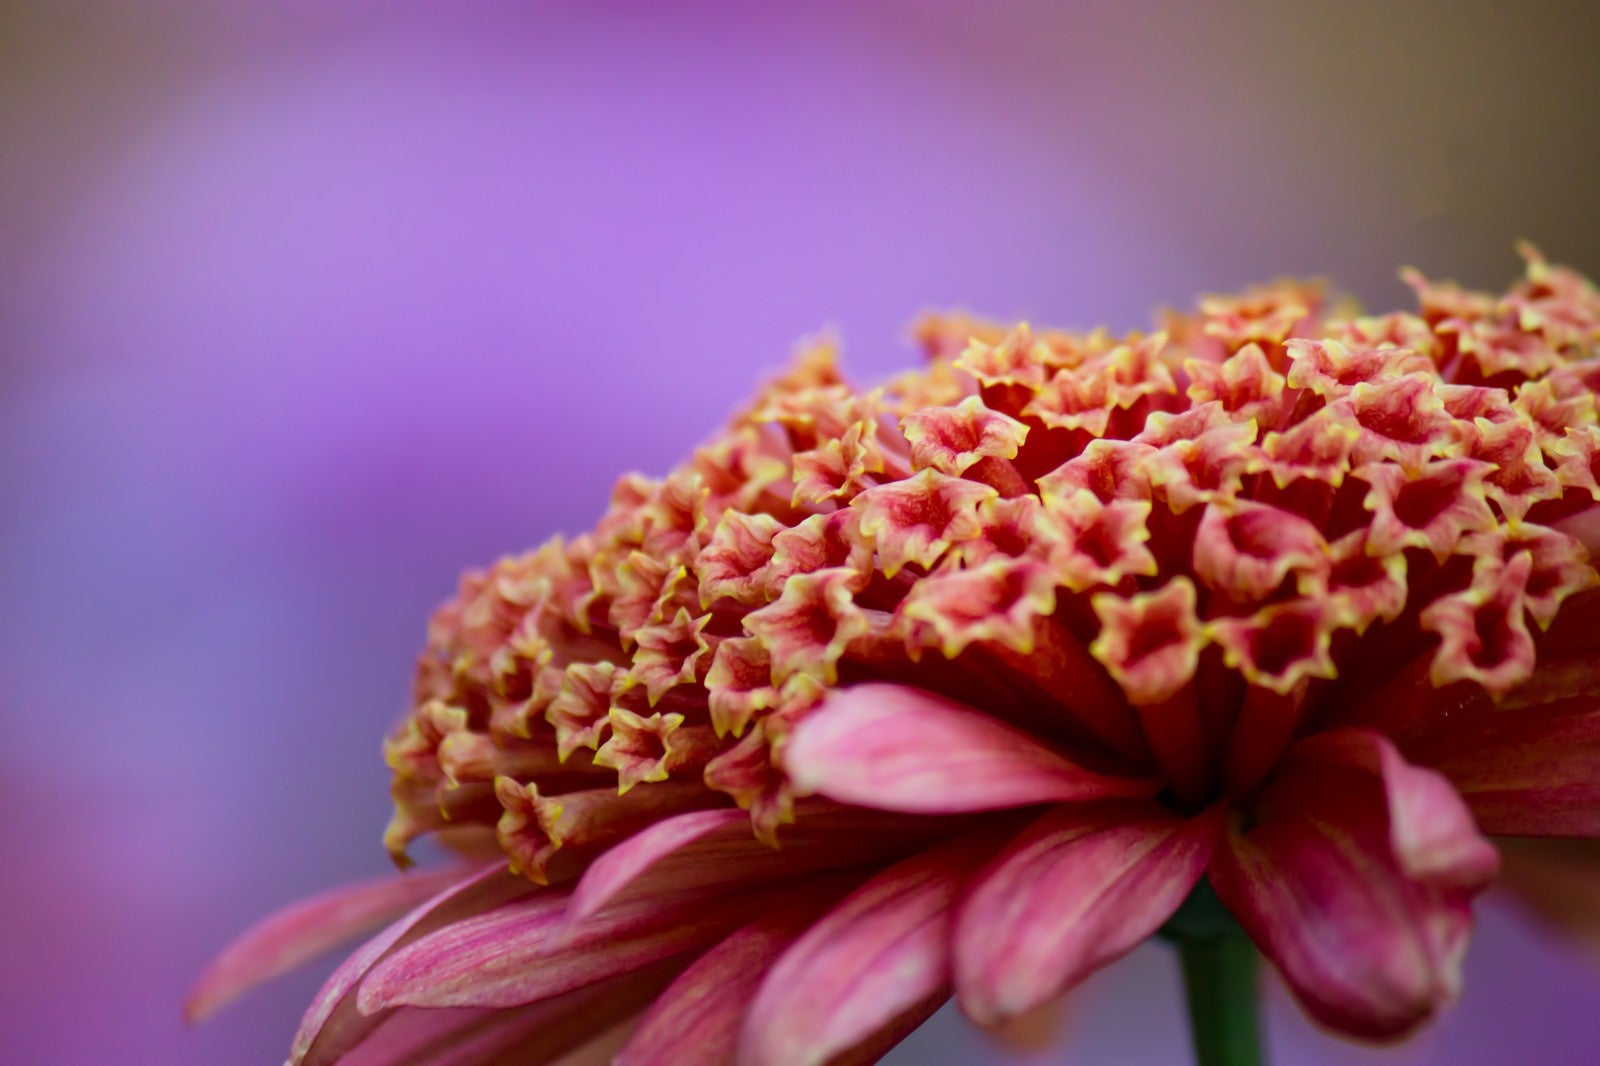 「大丁菊の花」の写真